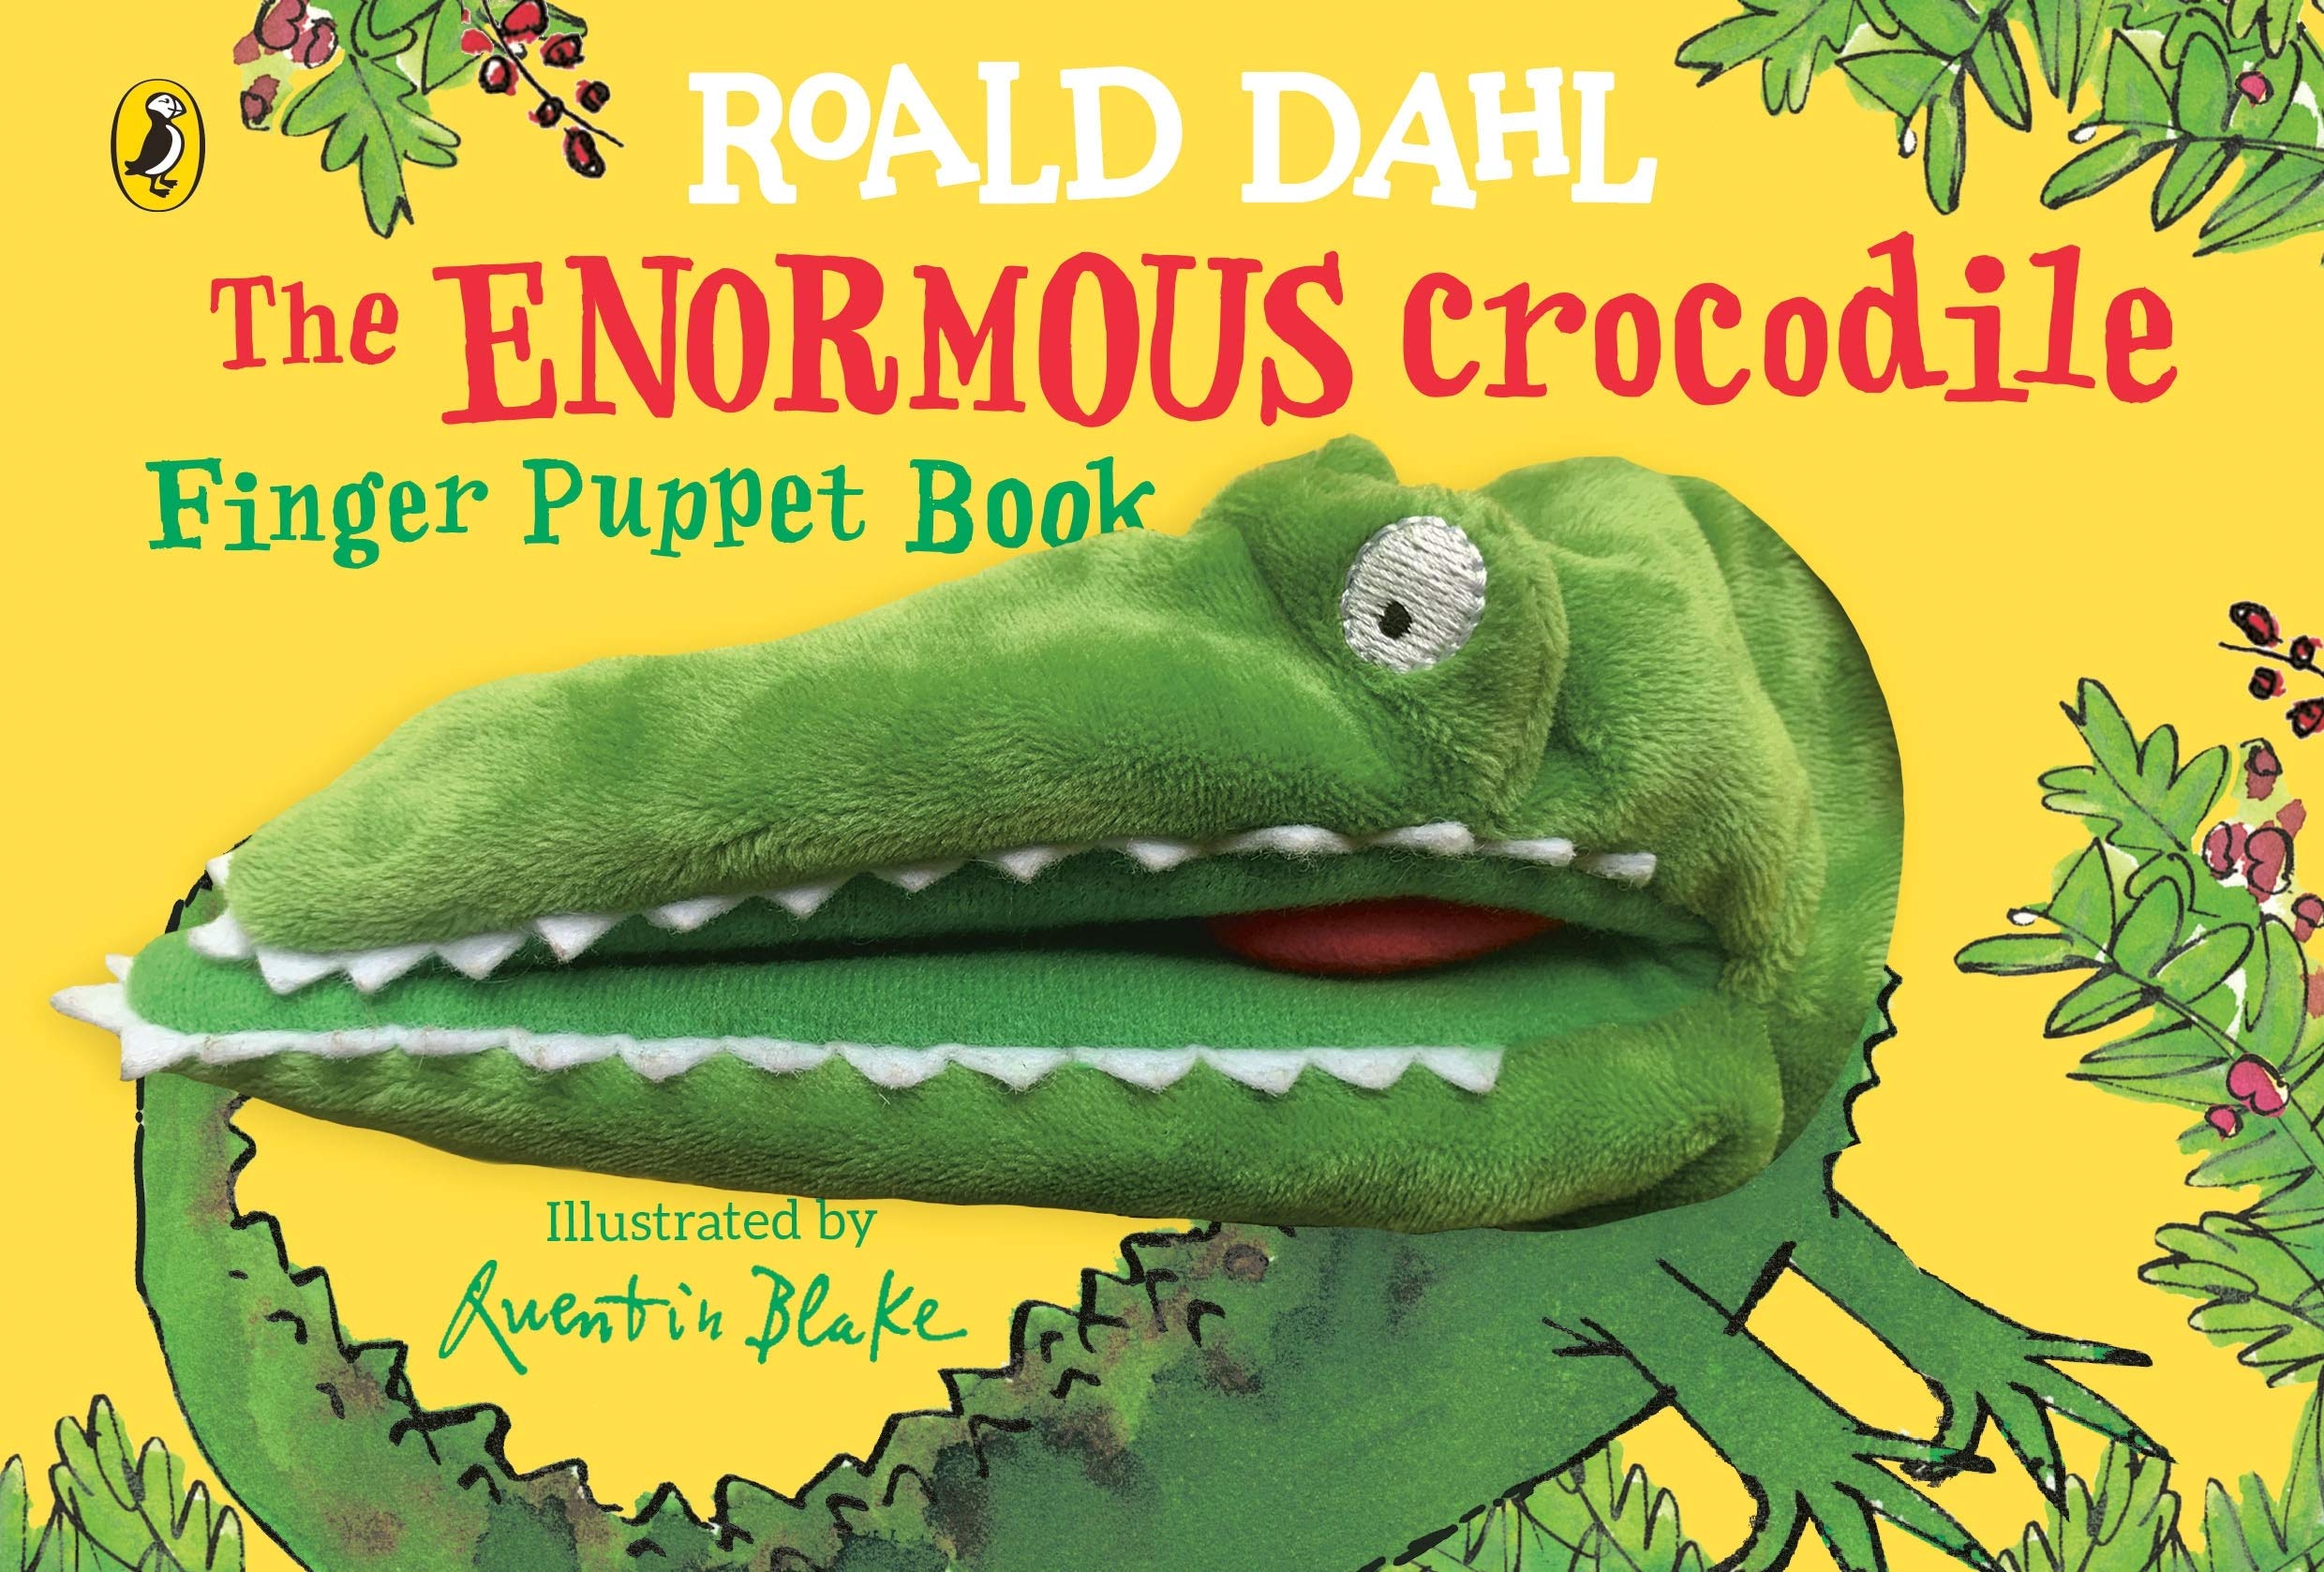 Enormous Crocodile\'s Finger Puppet Book | Roald Dahl